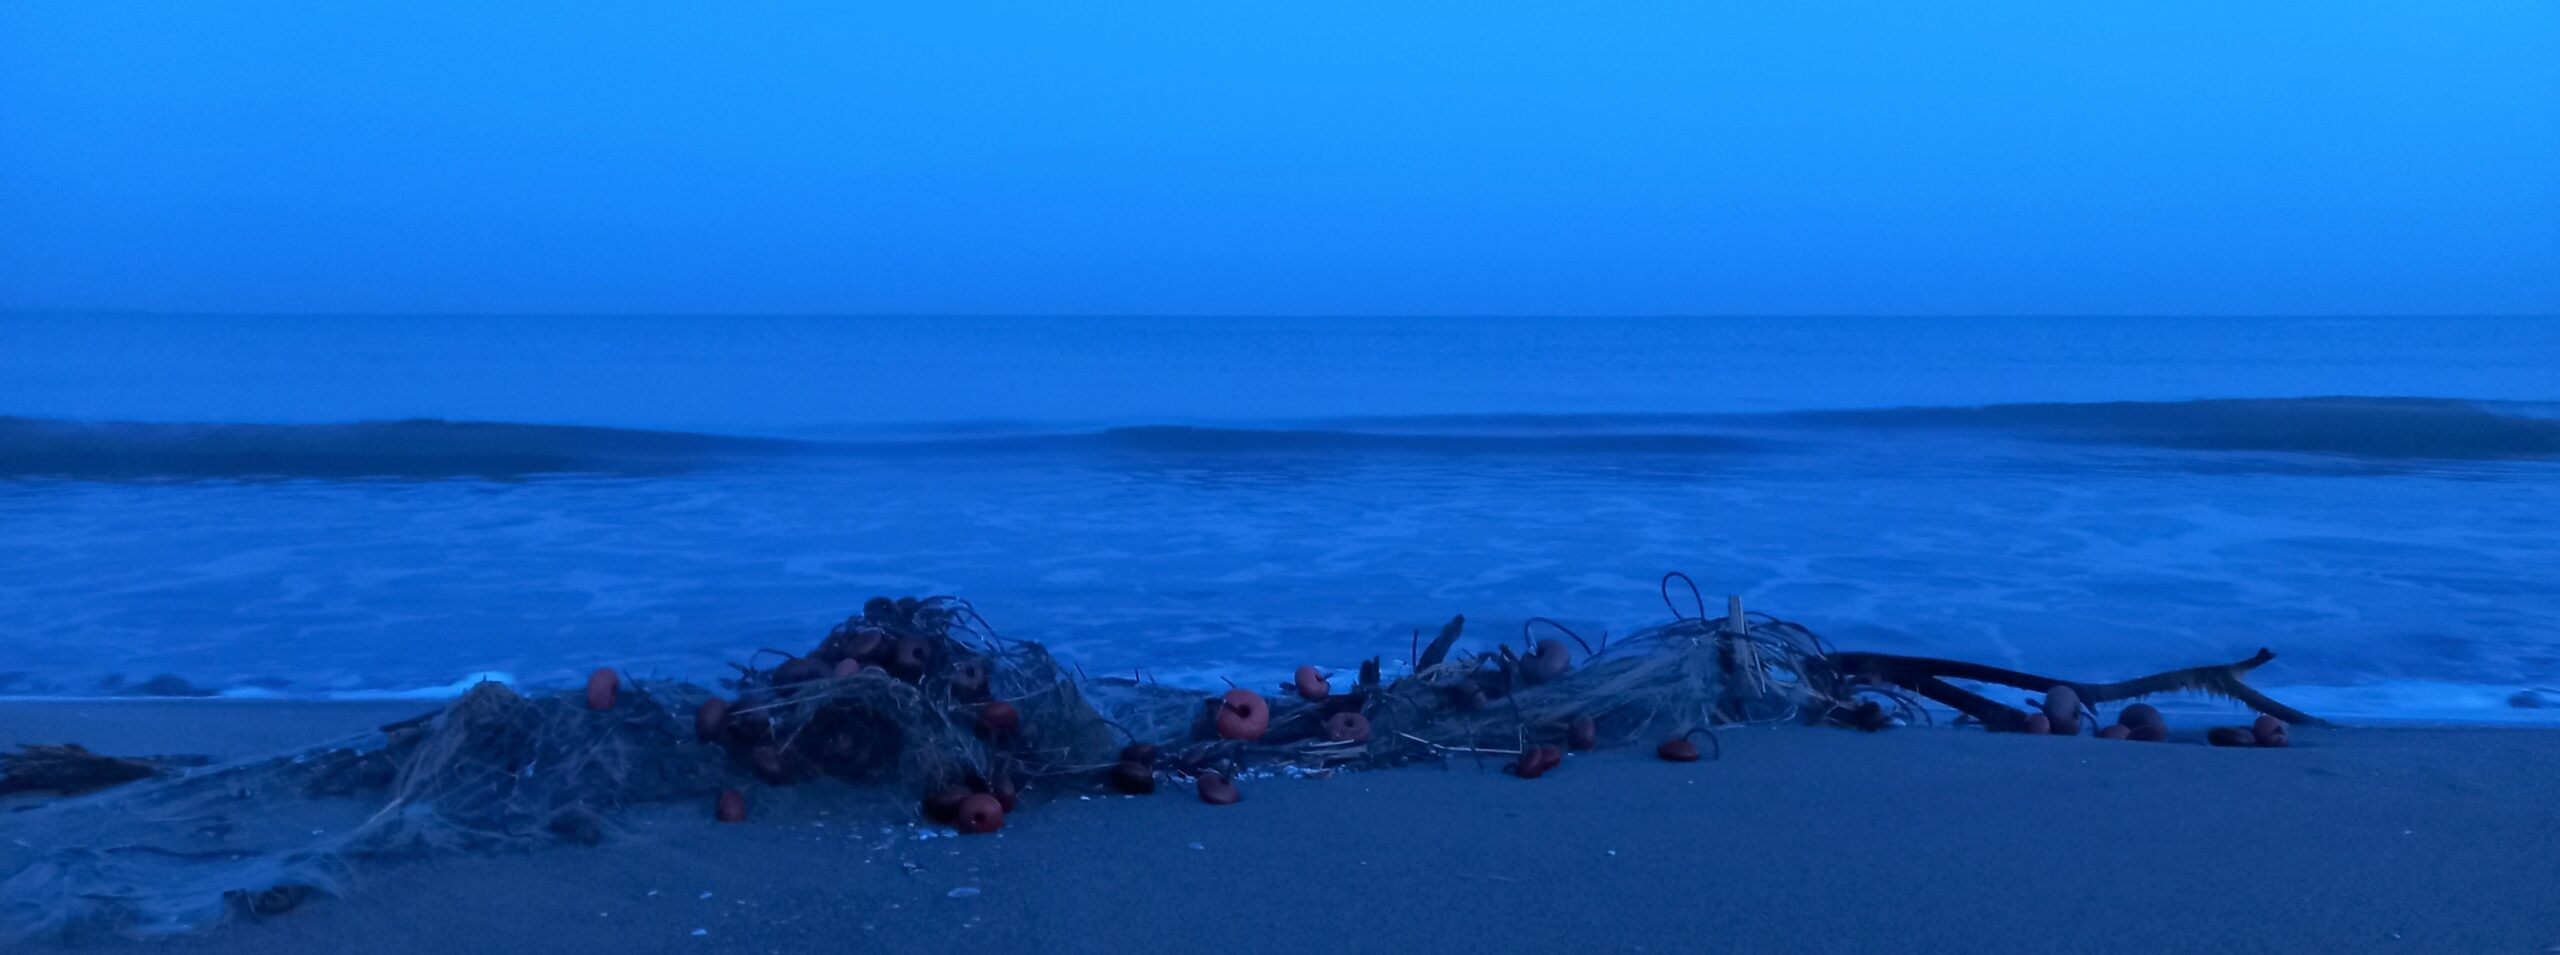 mare di notte oasi della playa museo dello spazio 1mqdb imprints of peace